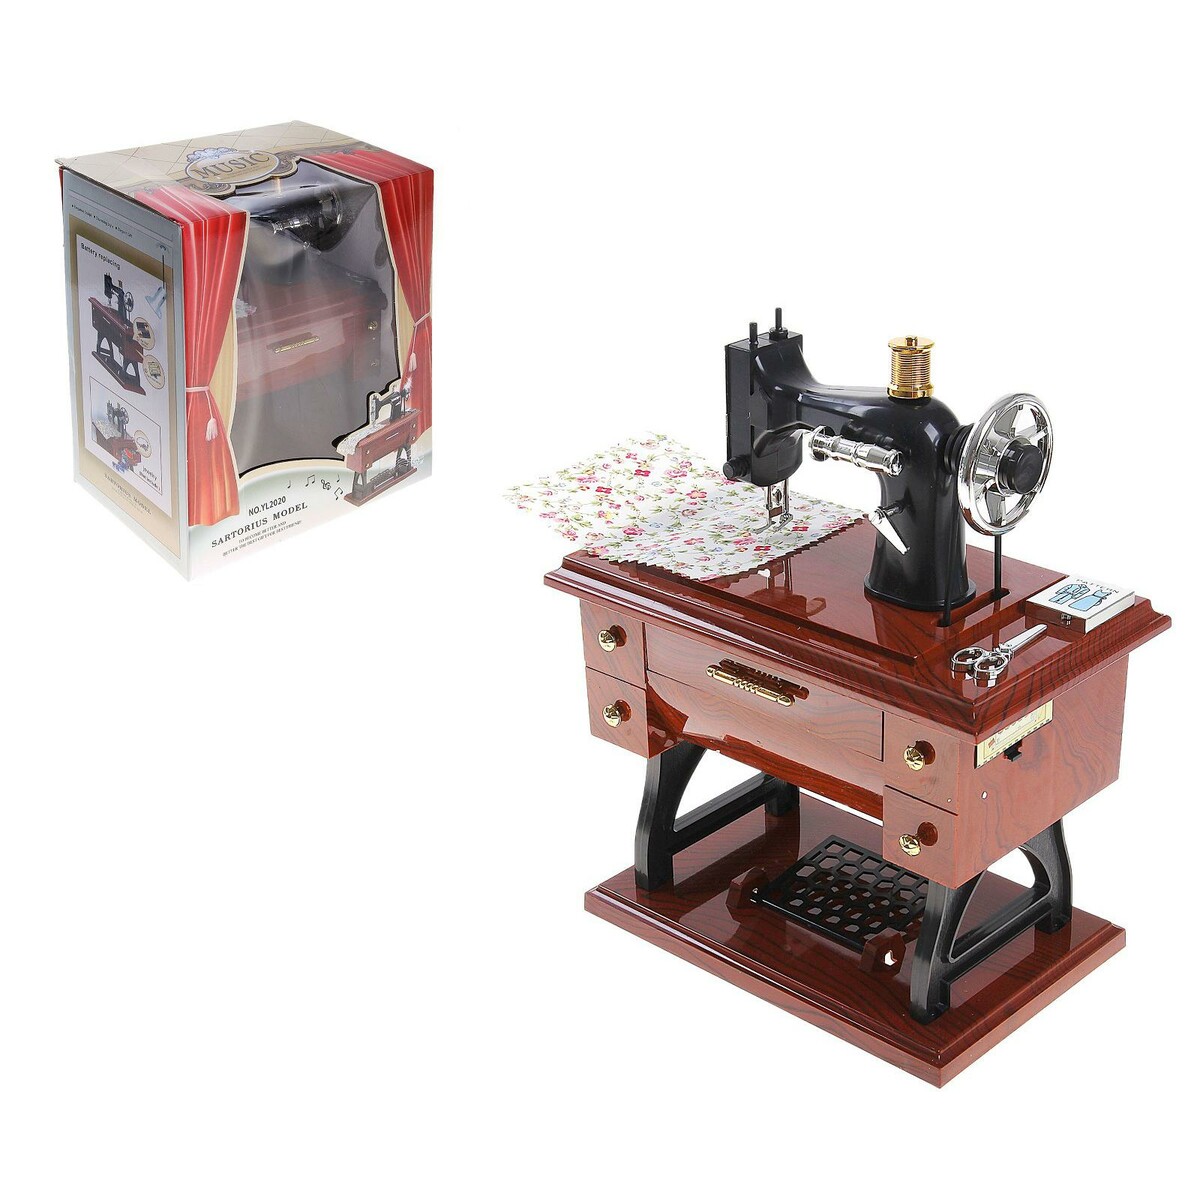 Машинка швейная шкатулка декоративная шкатулка из мдф нитки арт 35192 17 11 5 см арт 35192